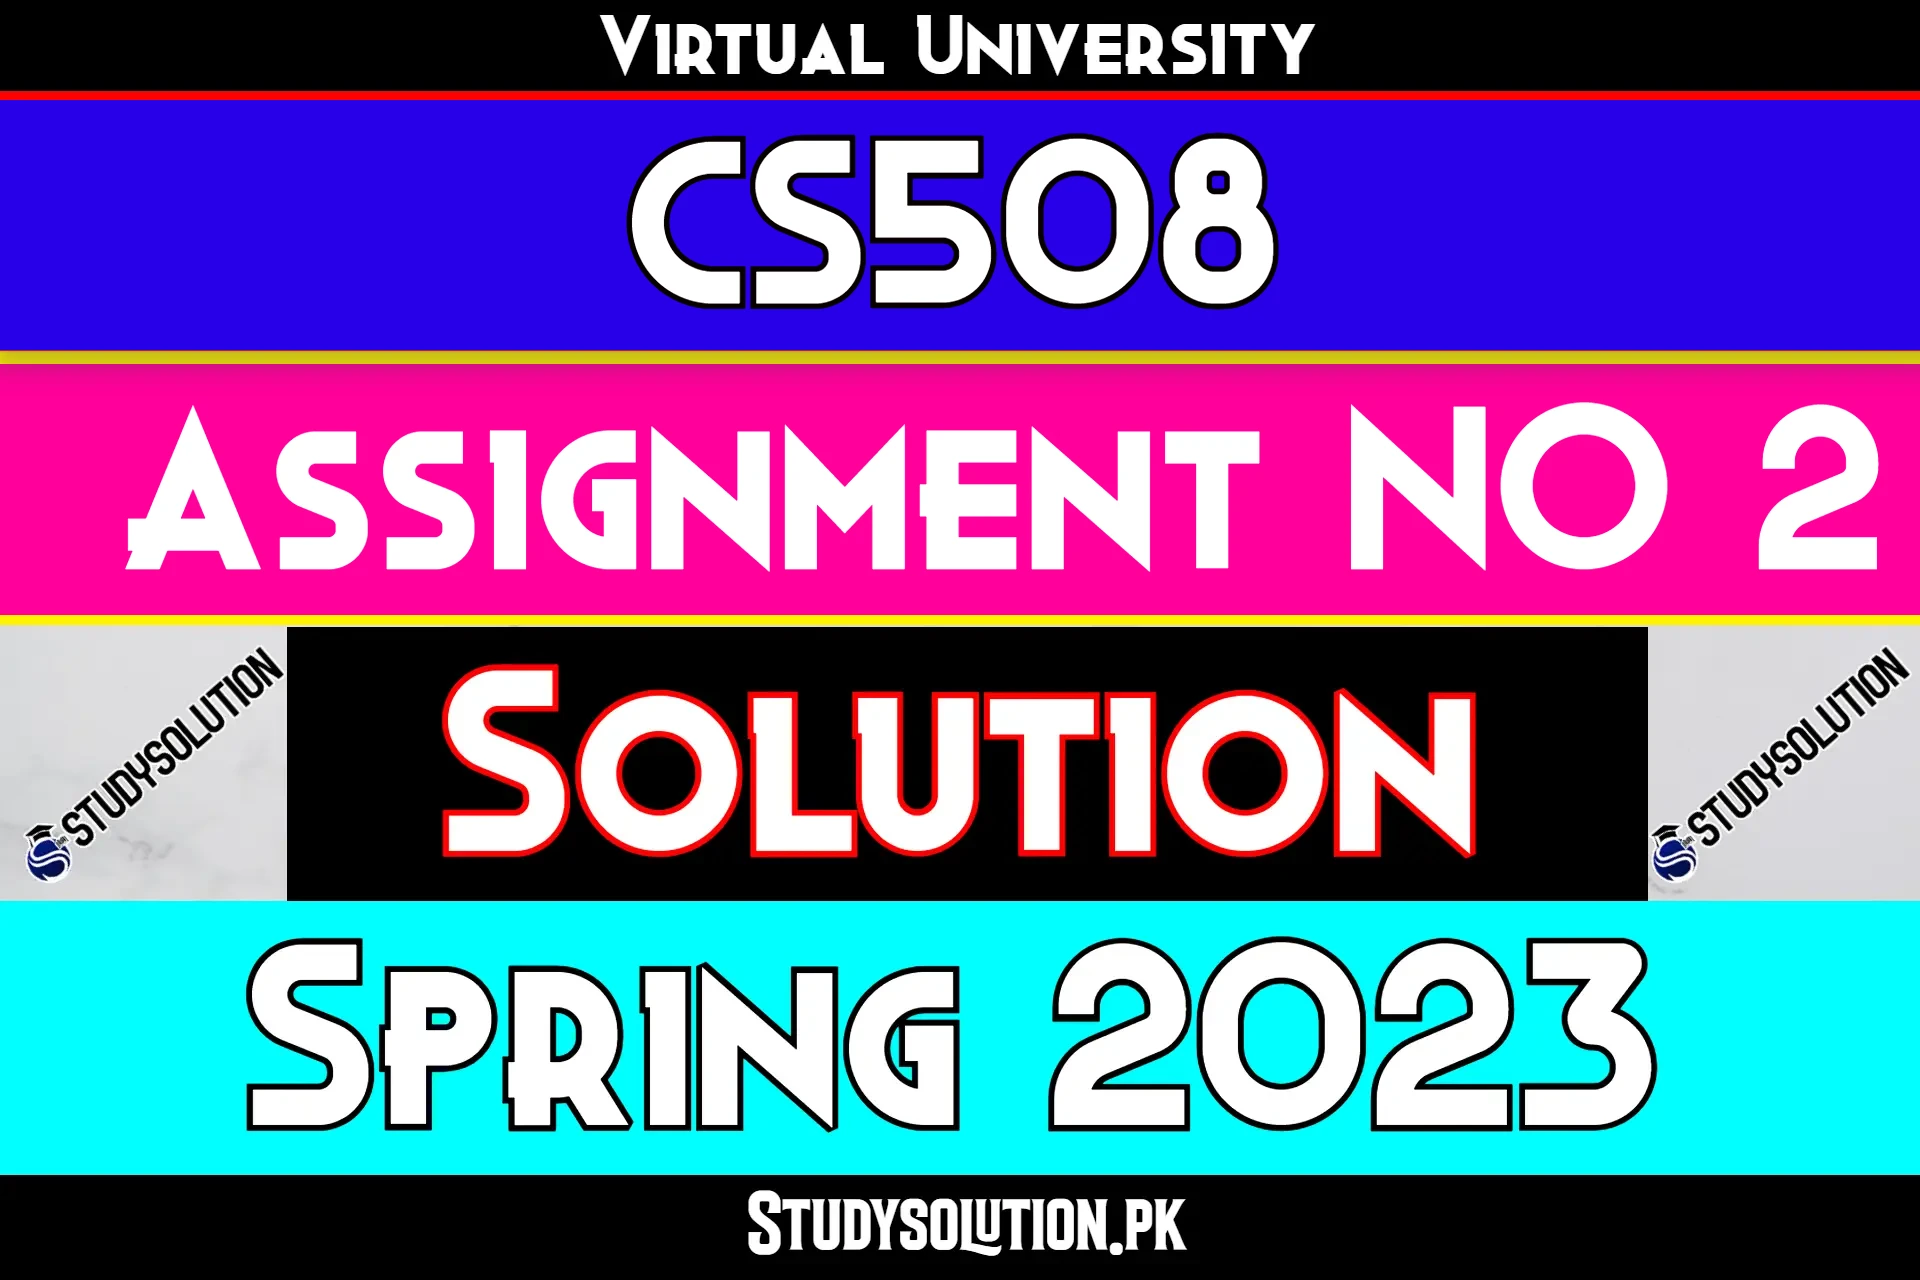 CS508 Assignment No 2 Solution Spring 2023